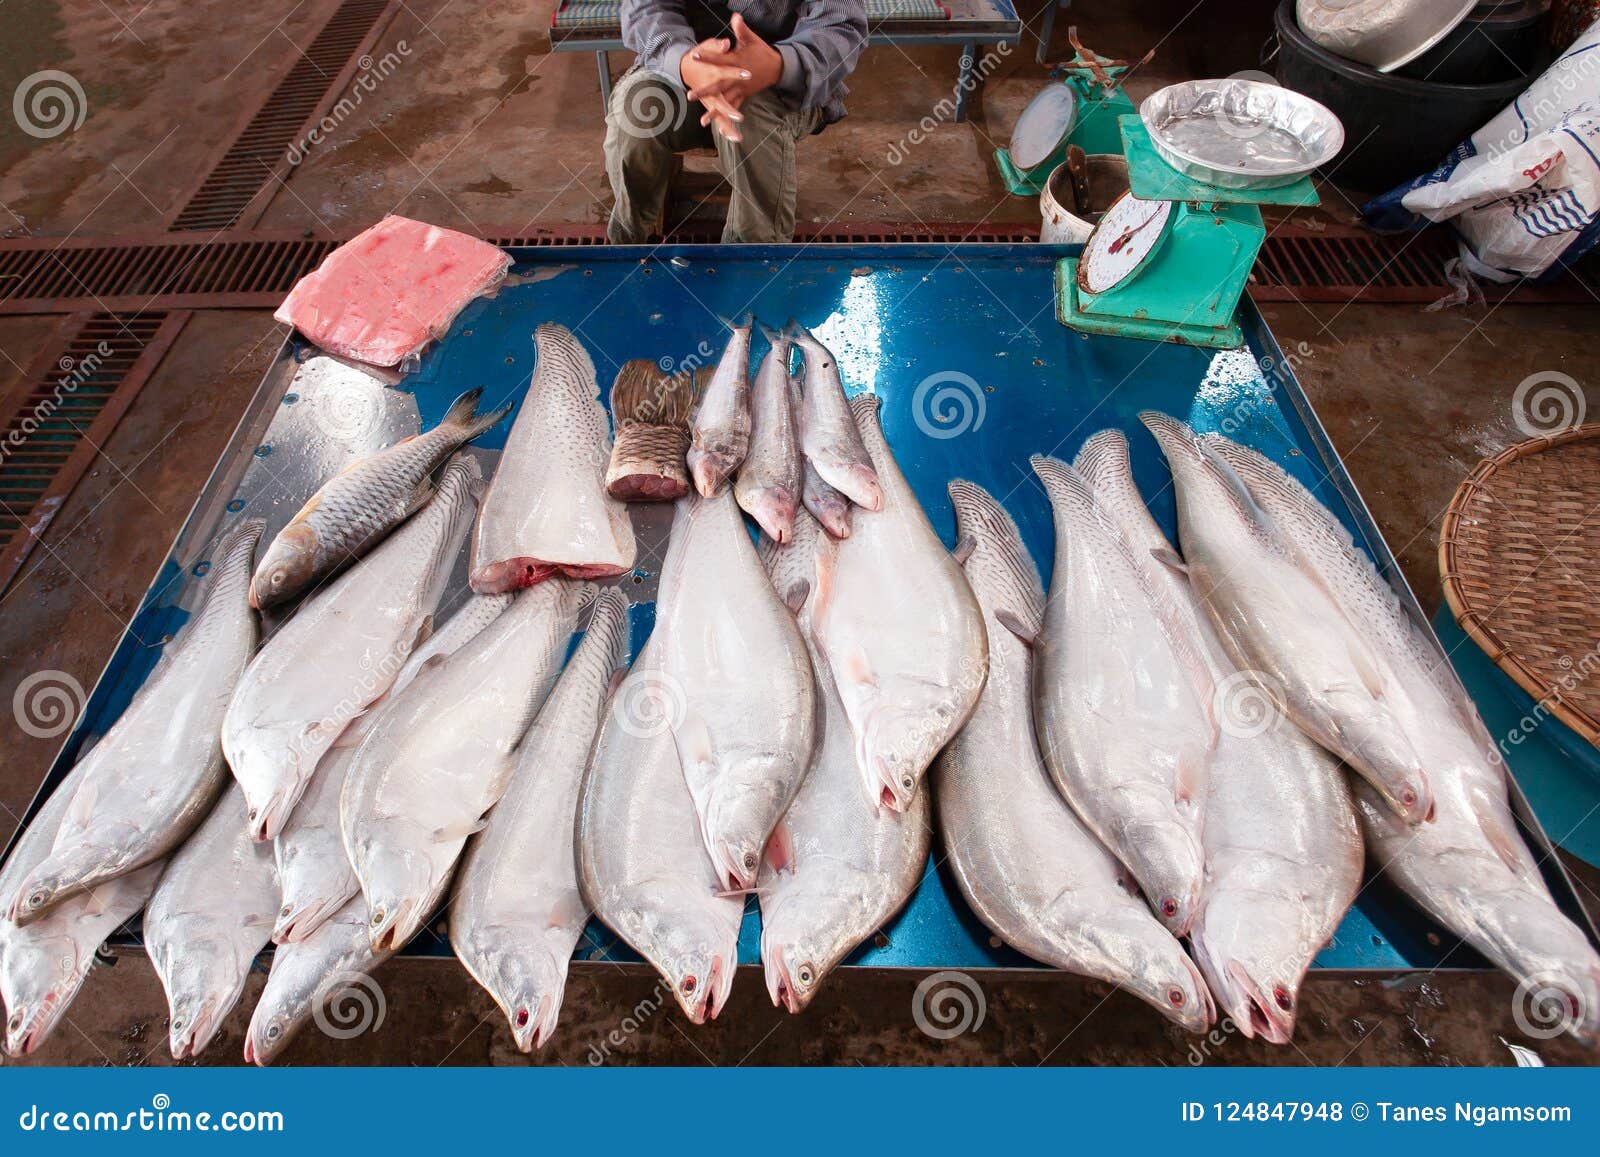 big freshwater fish from mekong river at pakse market. vender wa